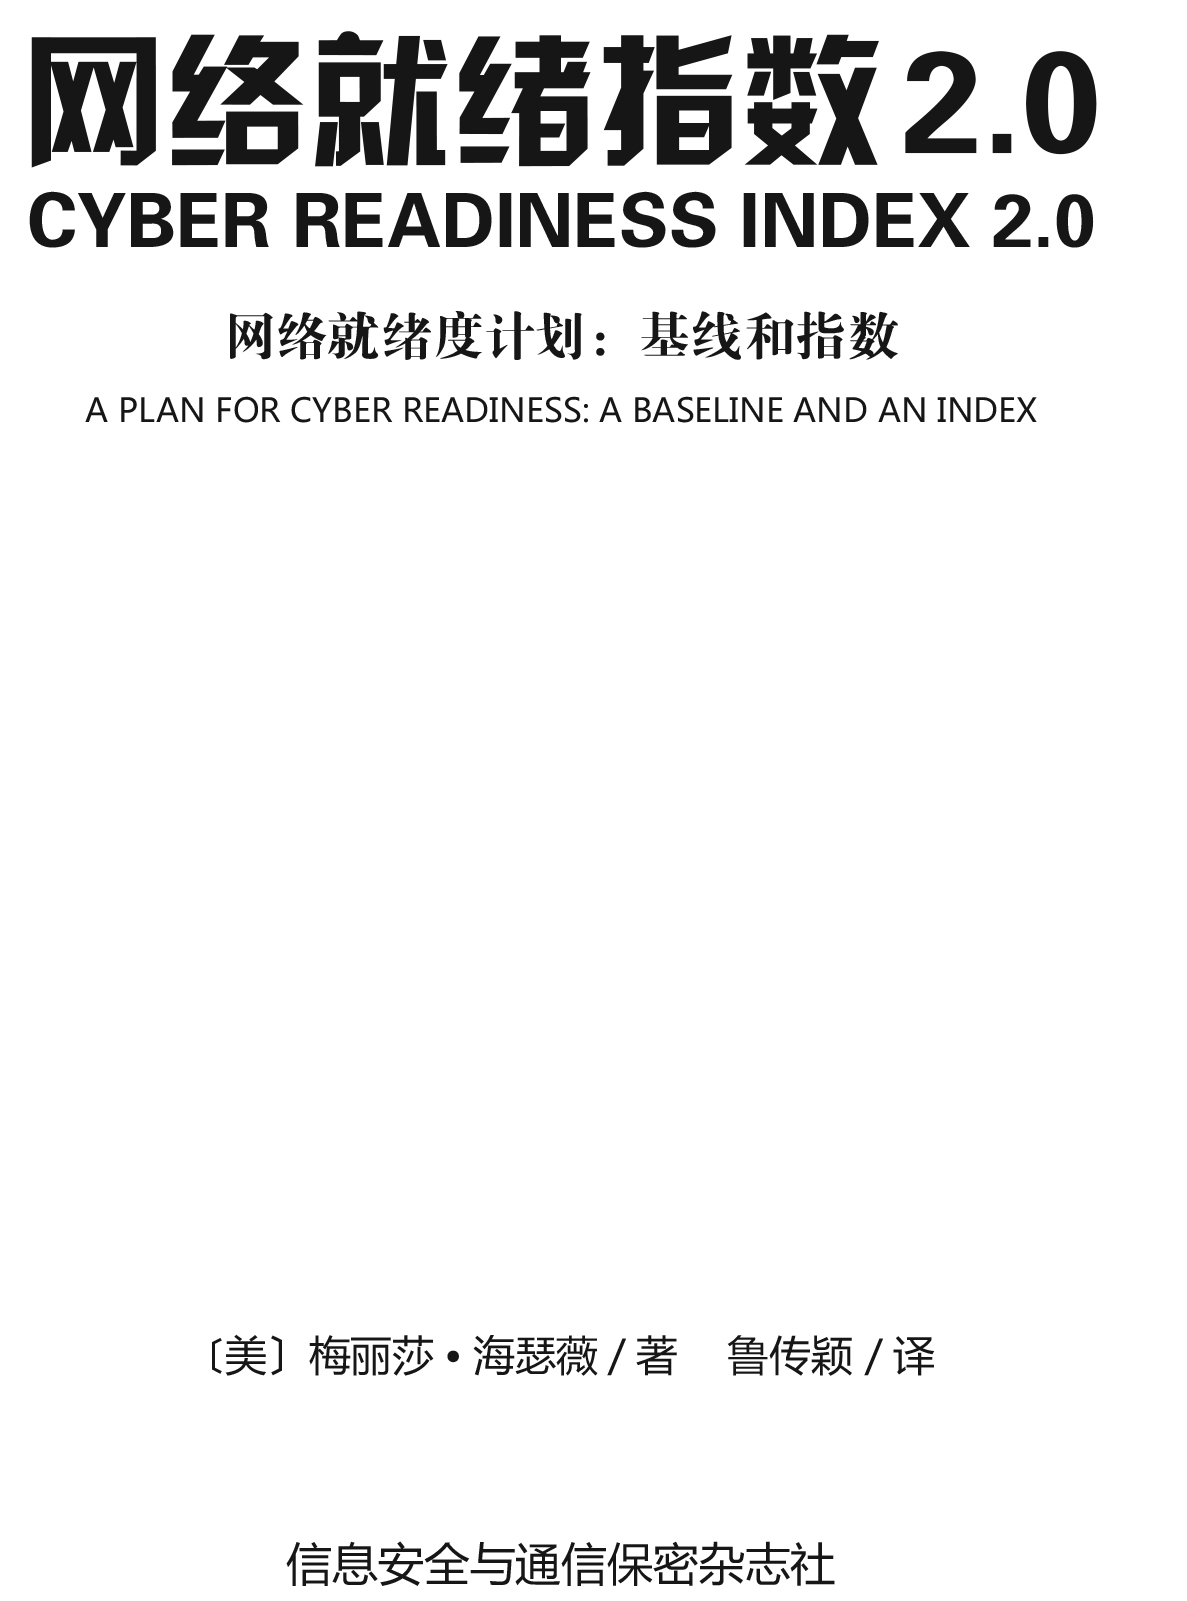 Compendium of 9 CRI Profiles Chinese 1